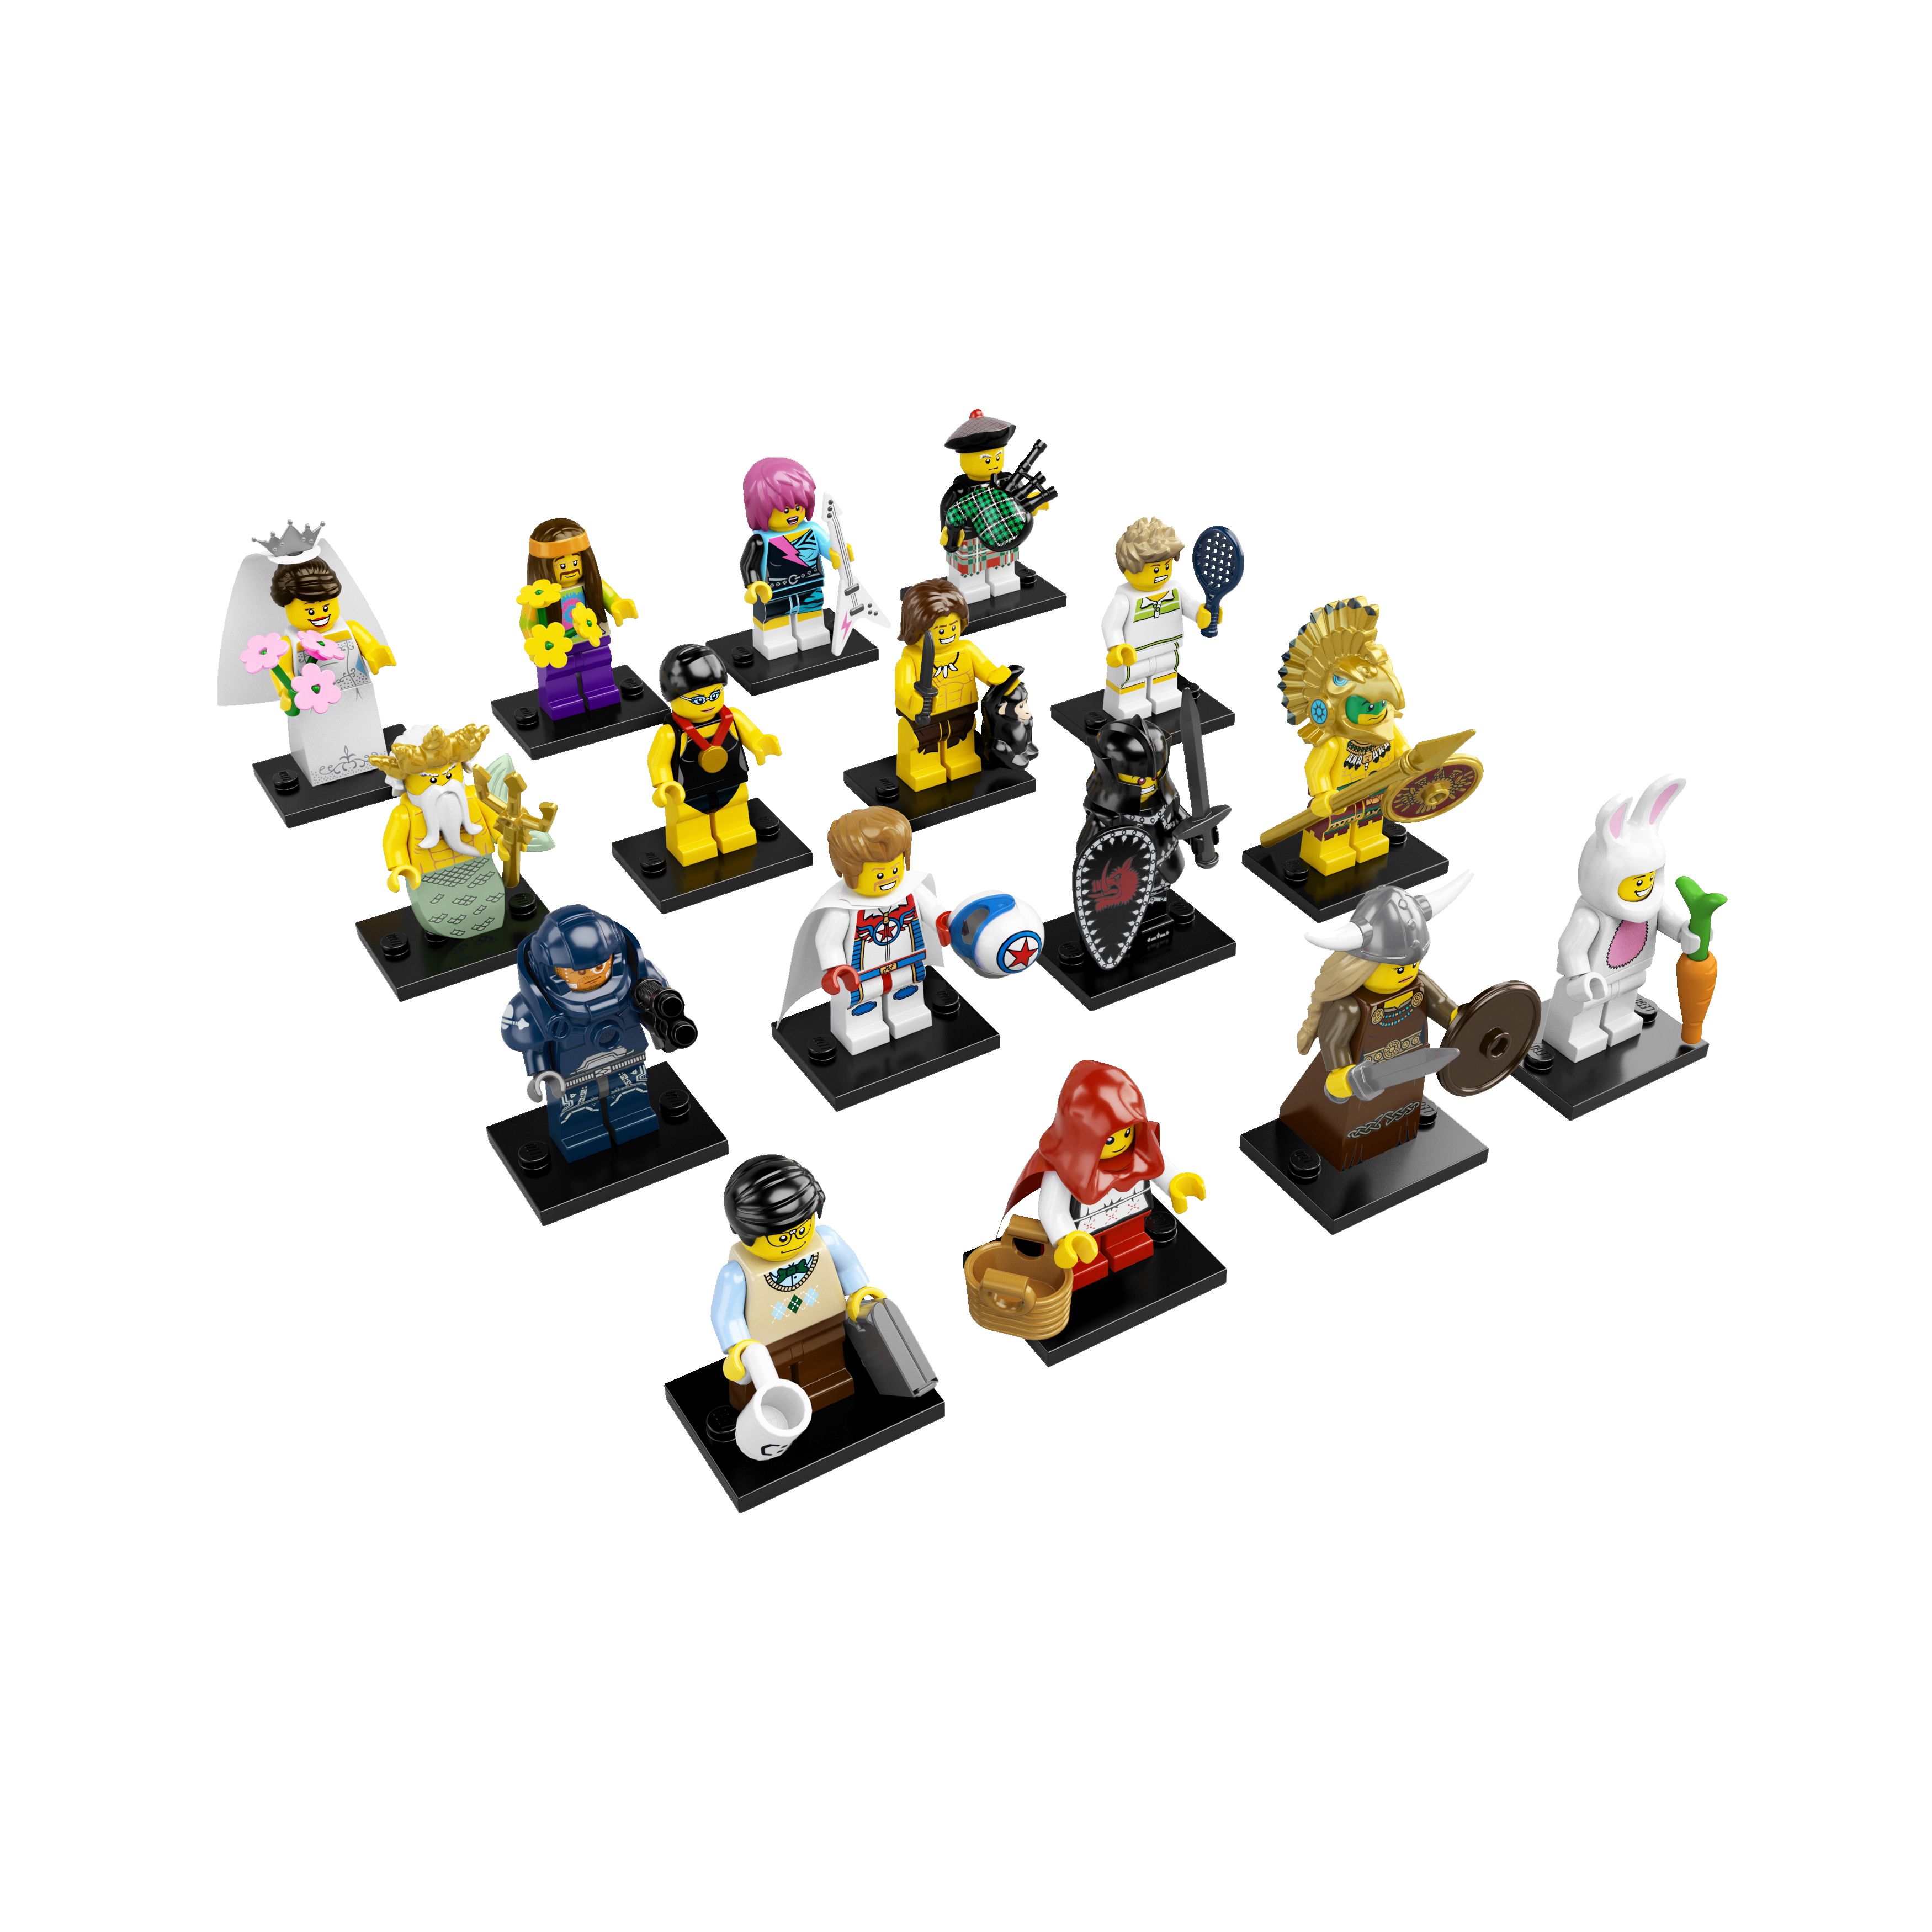 LEGO SERIES 1 2 3 4 5 6 7 8 COMPLETE (128 SEALED) FULL SET MINIFIGURE